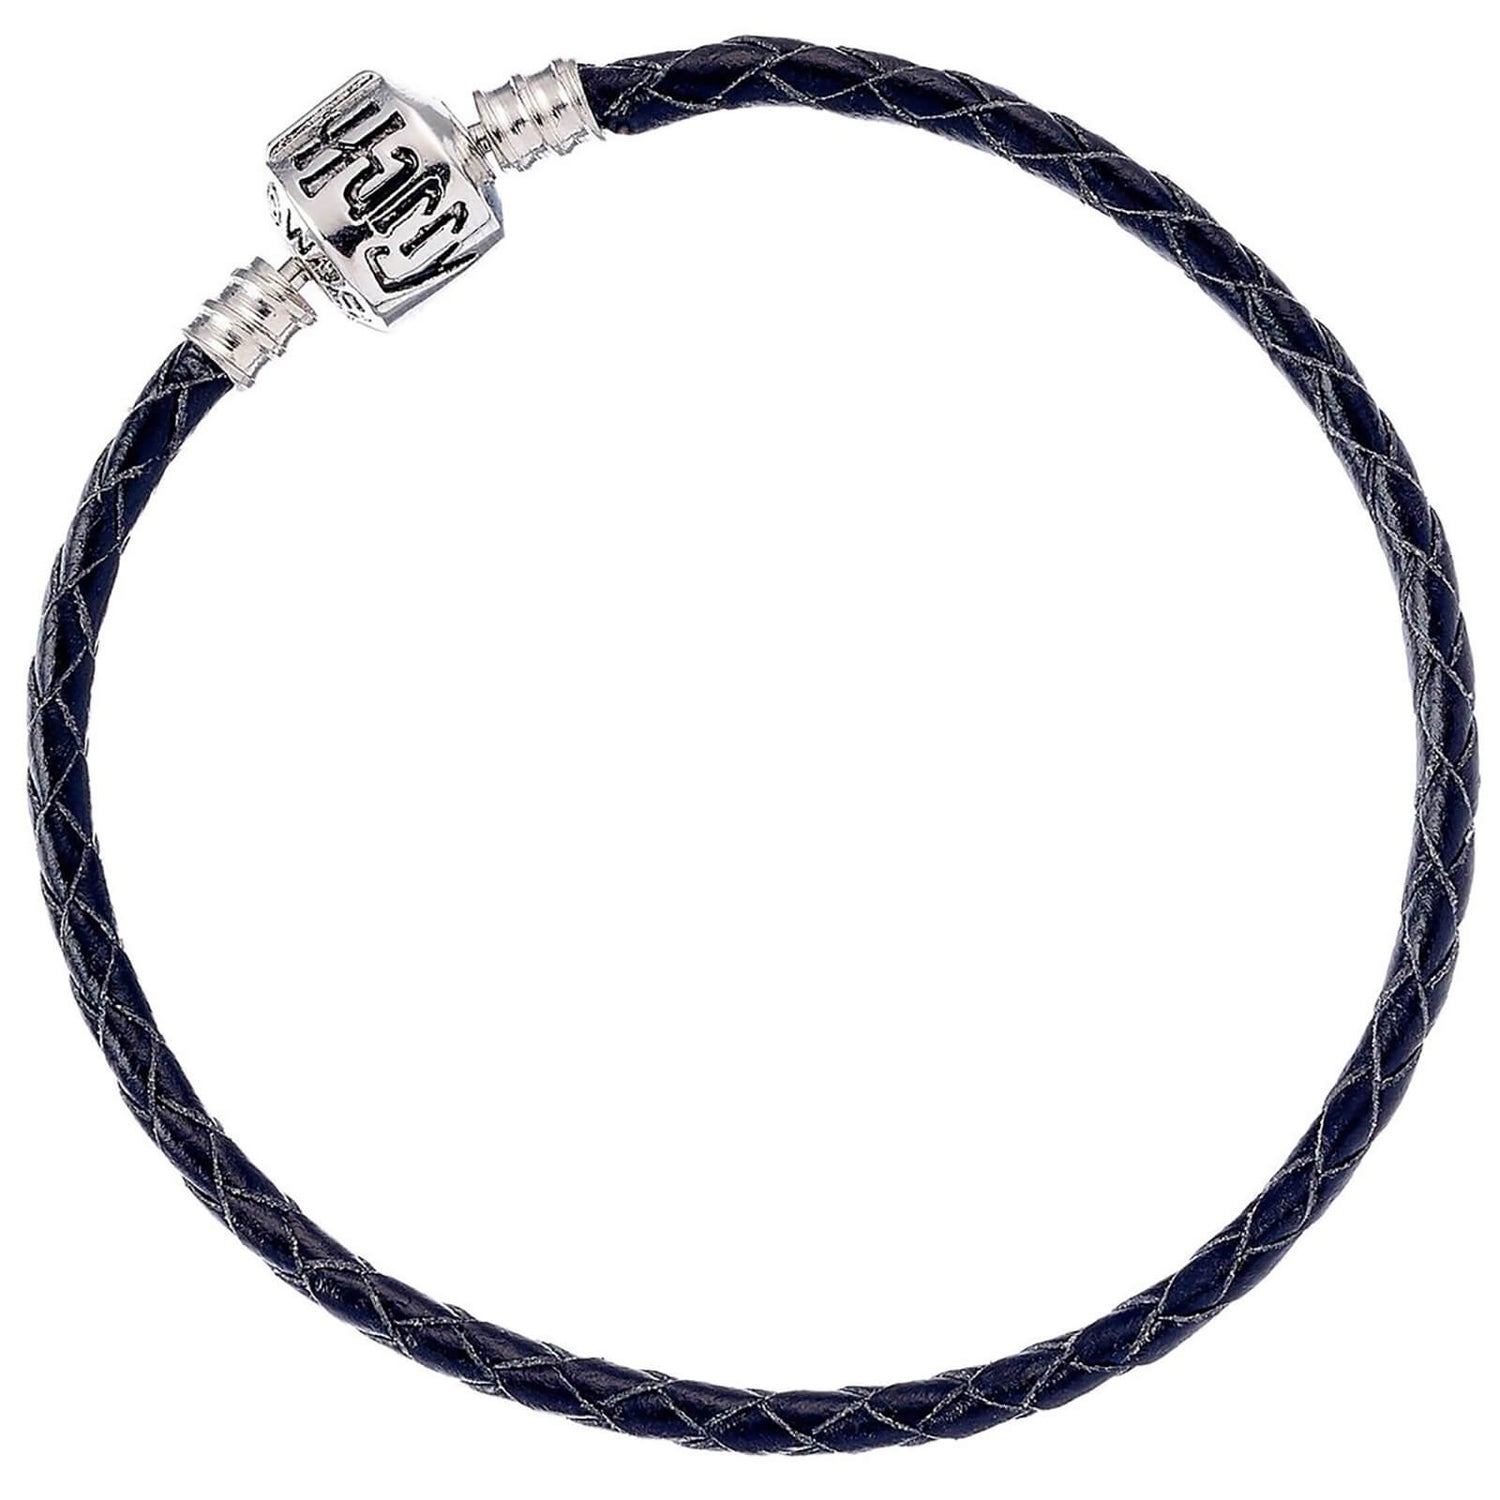 Harry Potter Leather Charm Bracelet - Black